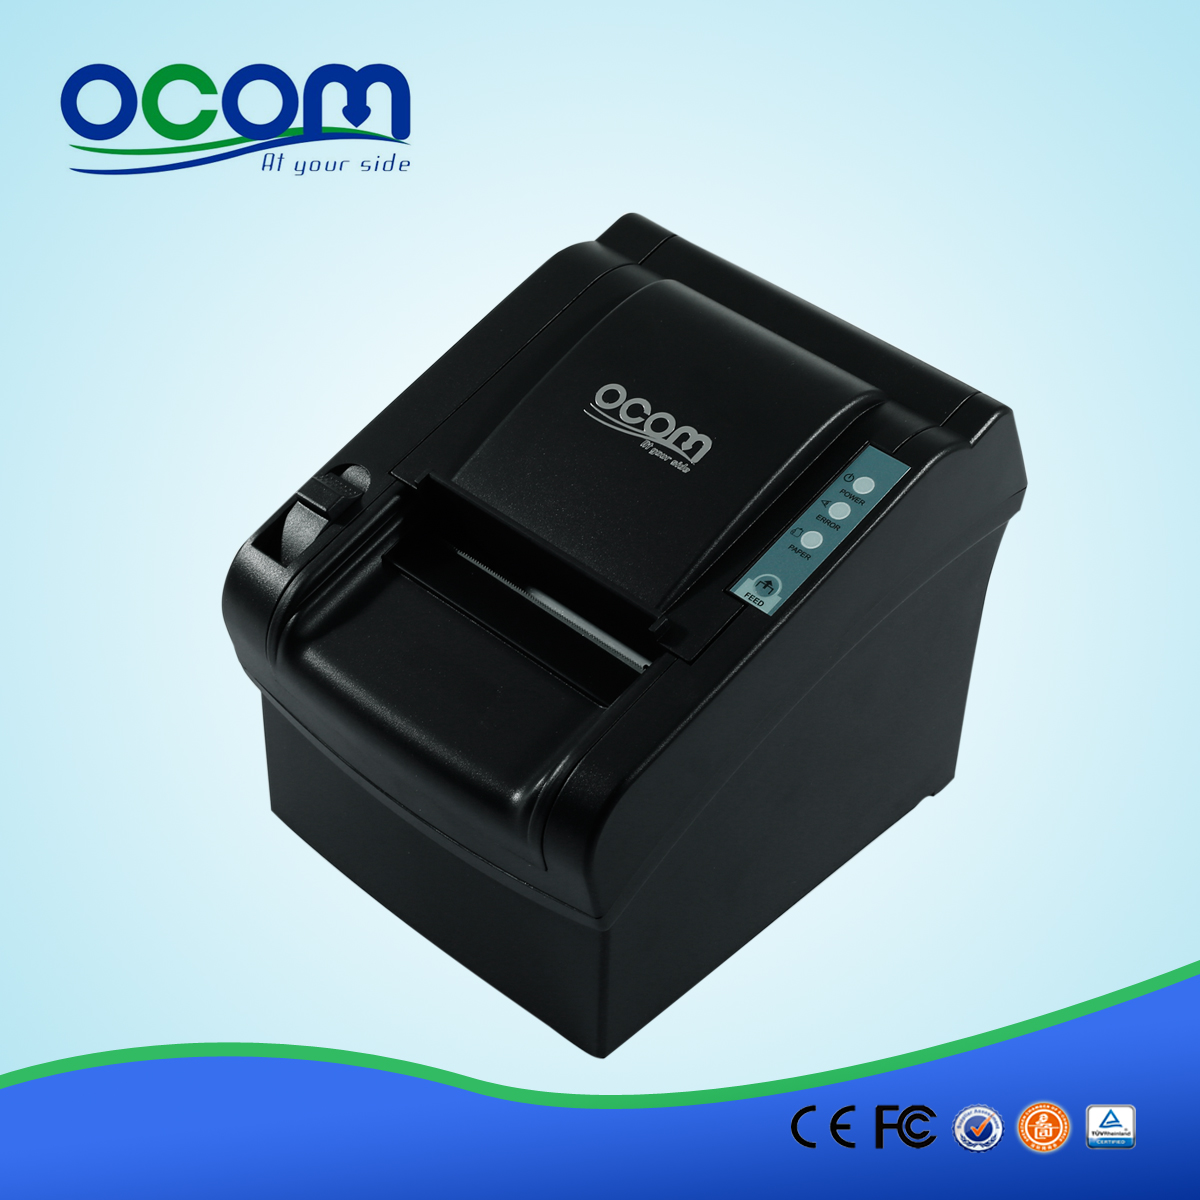 80mm de alta calidad térmica impresora de la posición de recepción (OCPP-802)